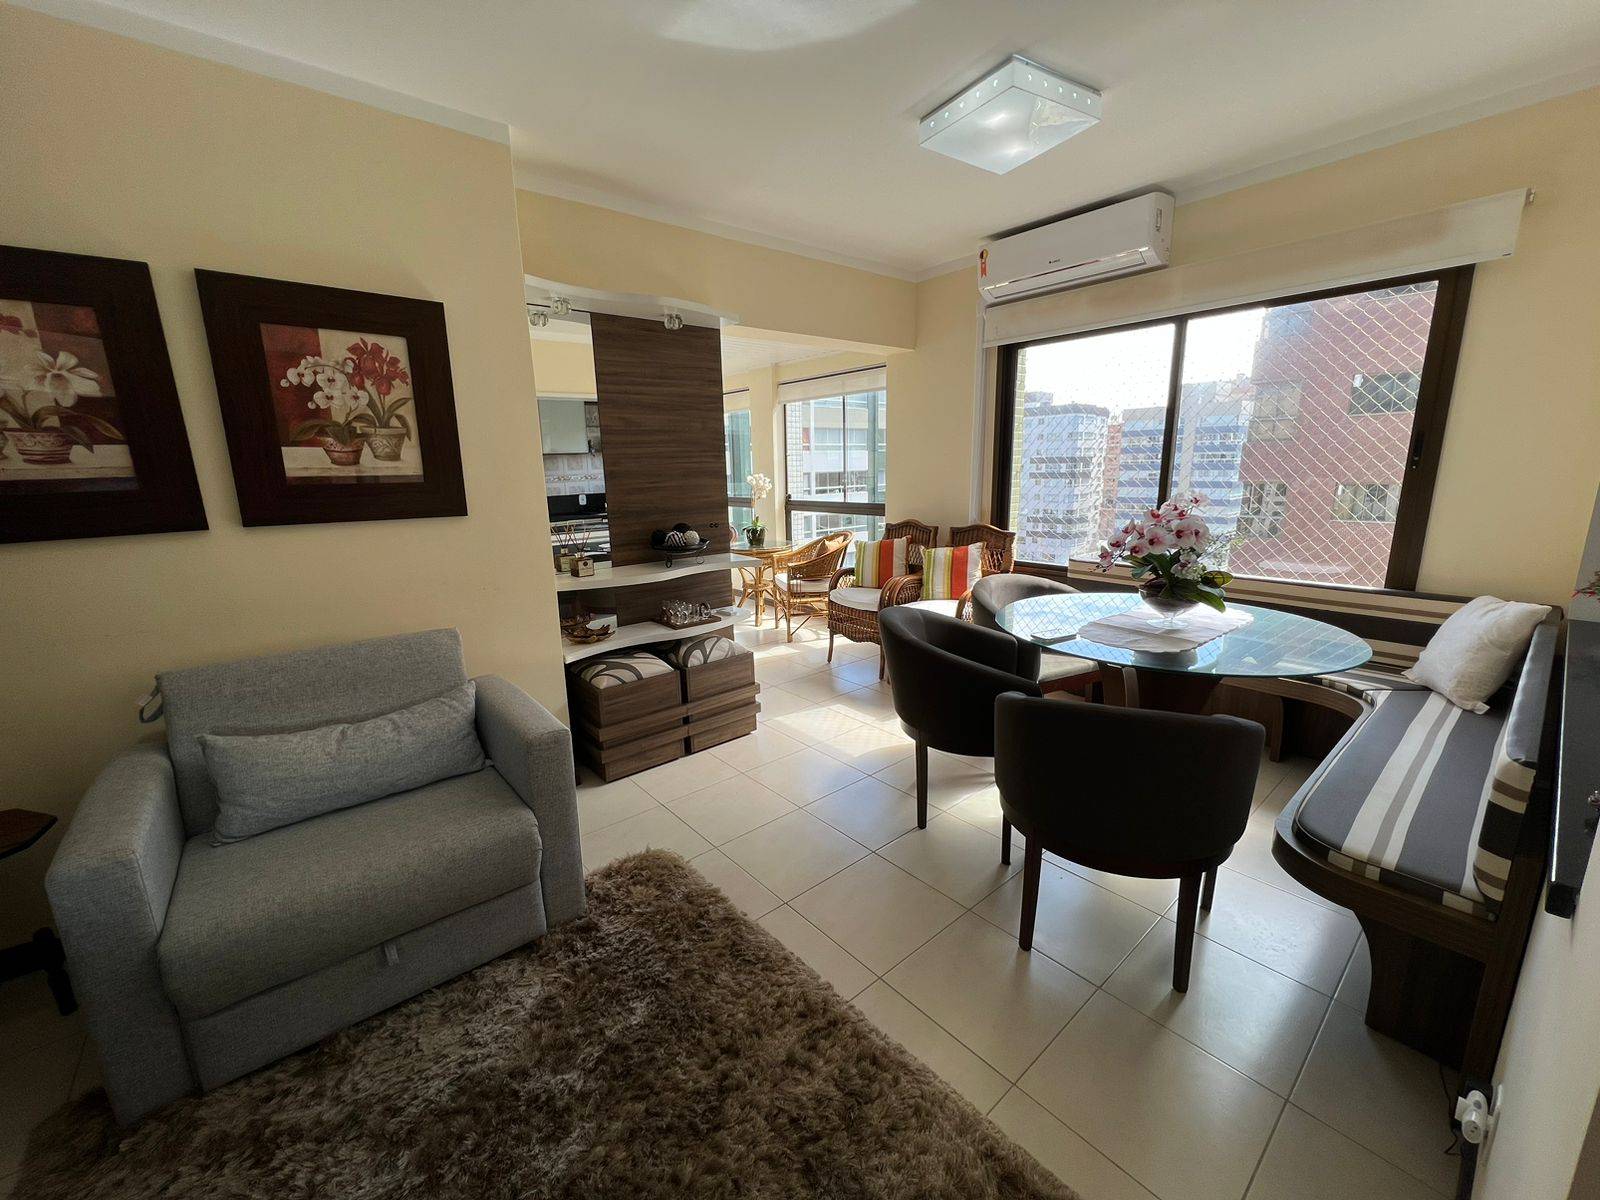 Apartamento 2 dormitórios em Capão da Canoa | Ref.: 4938